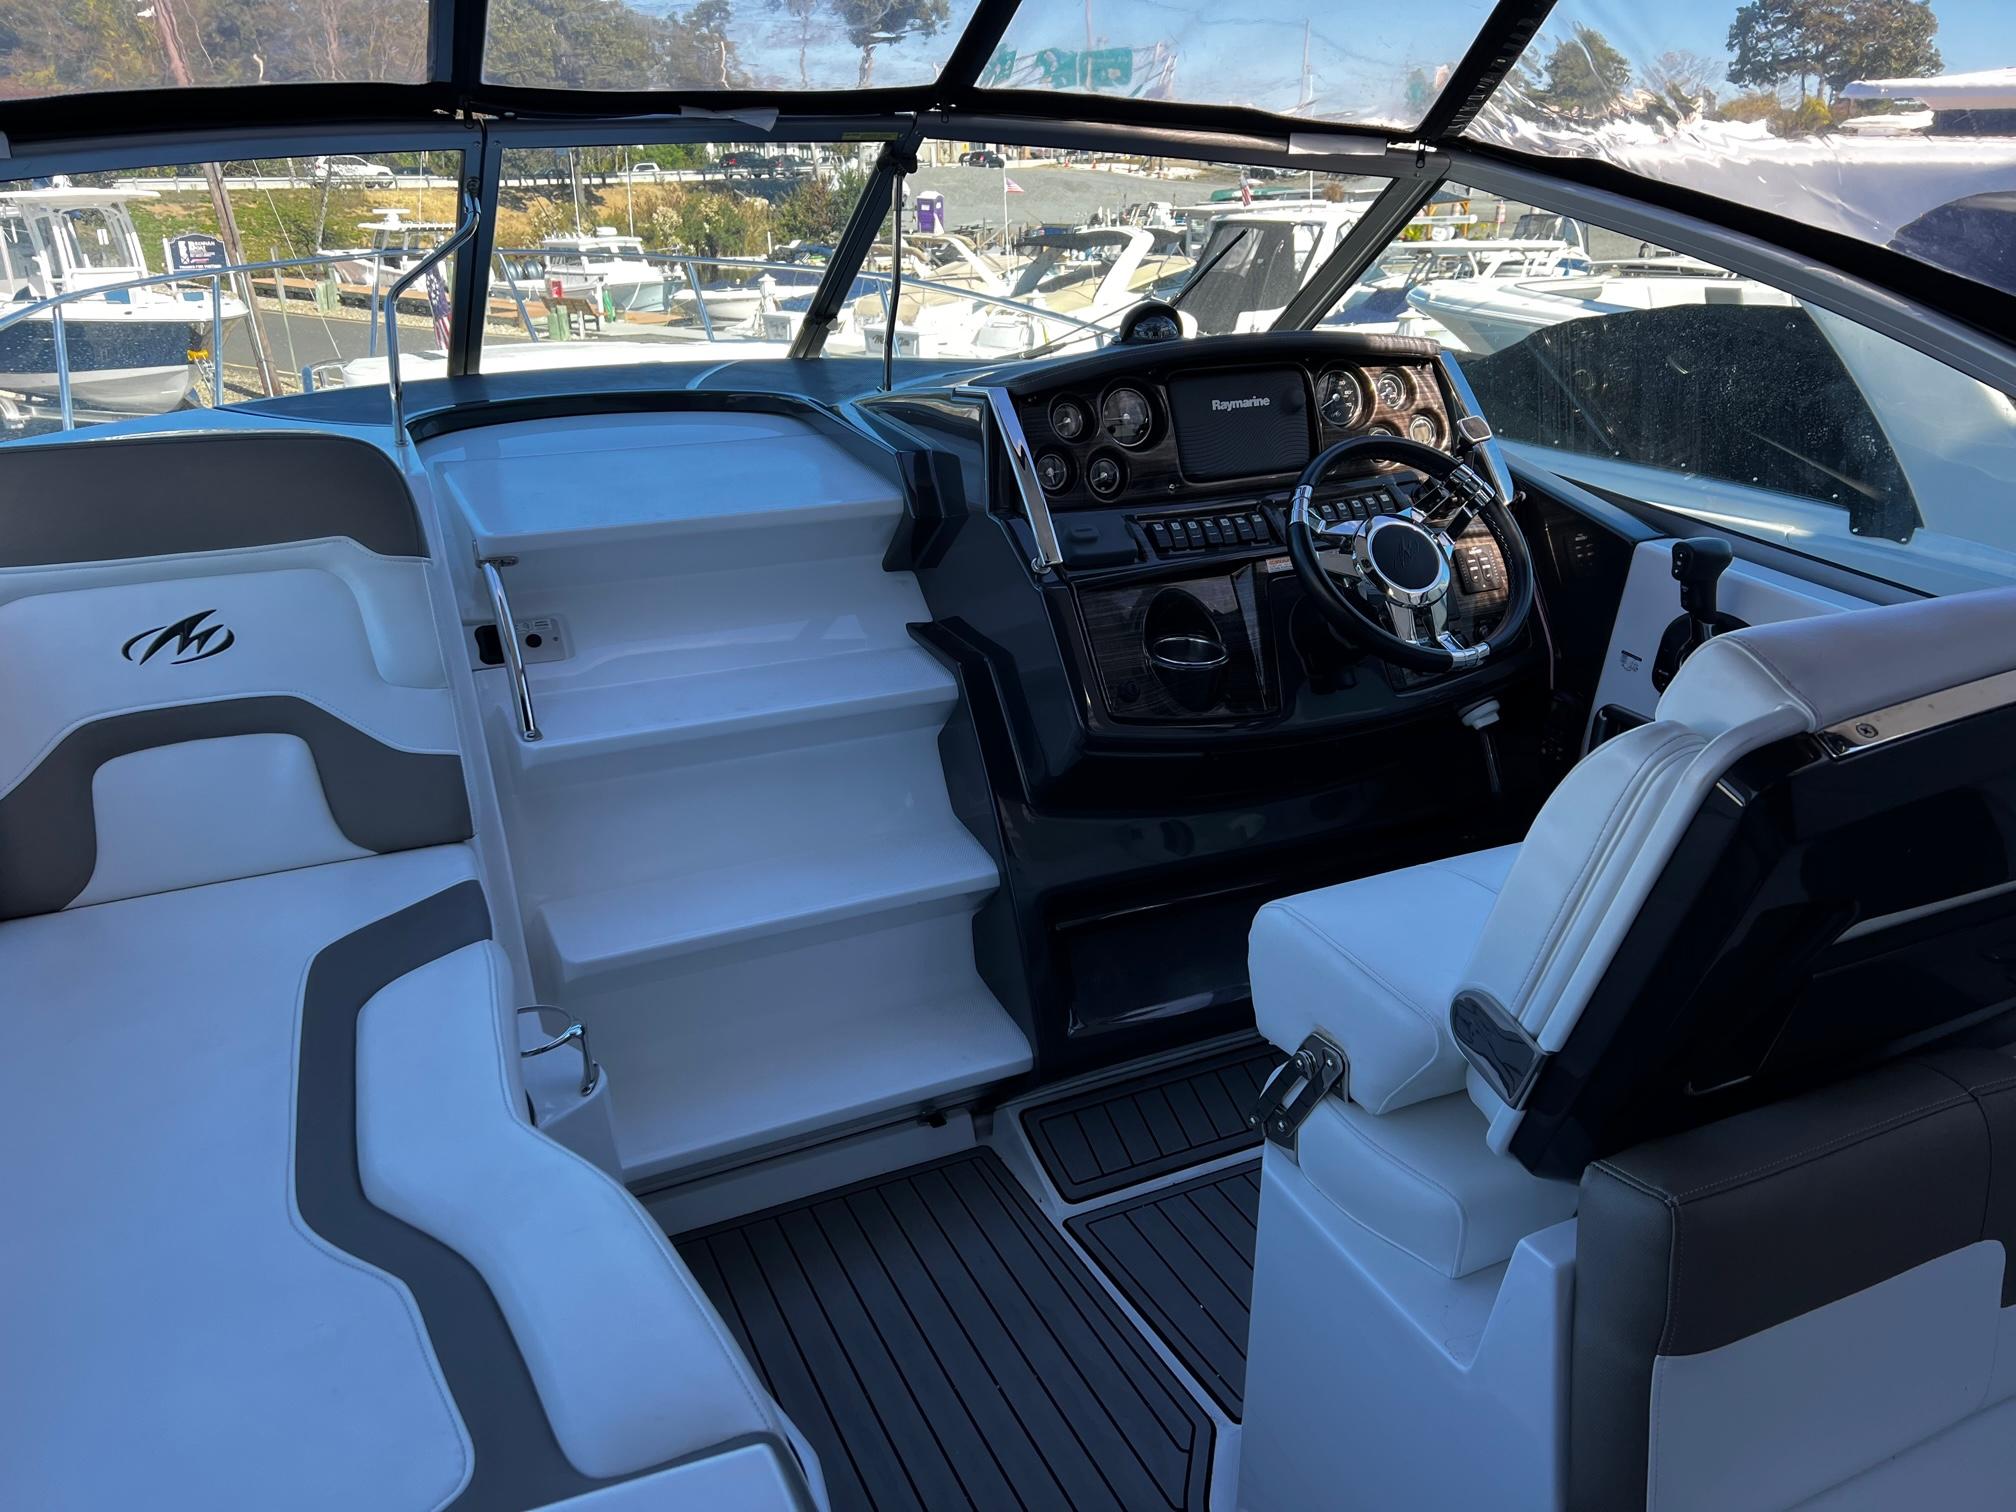 2016 Monterey 295 Sport Yacht